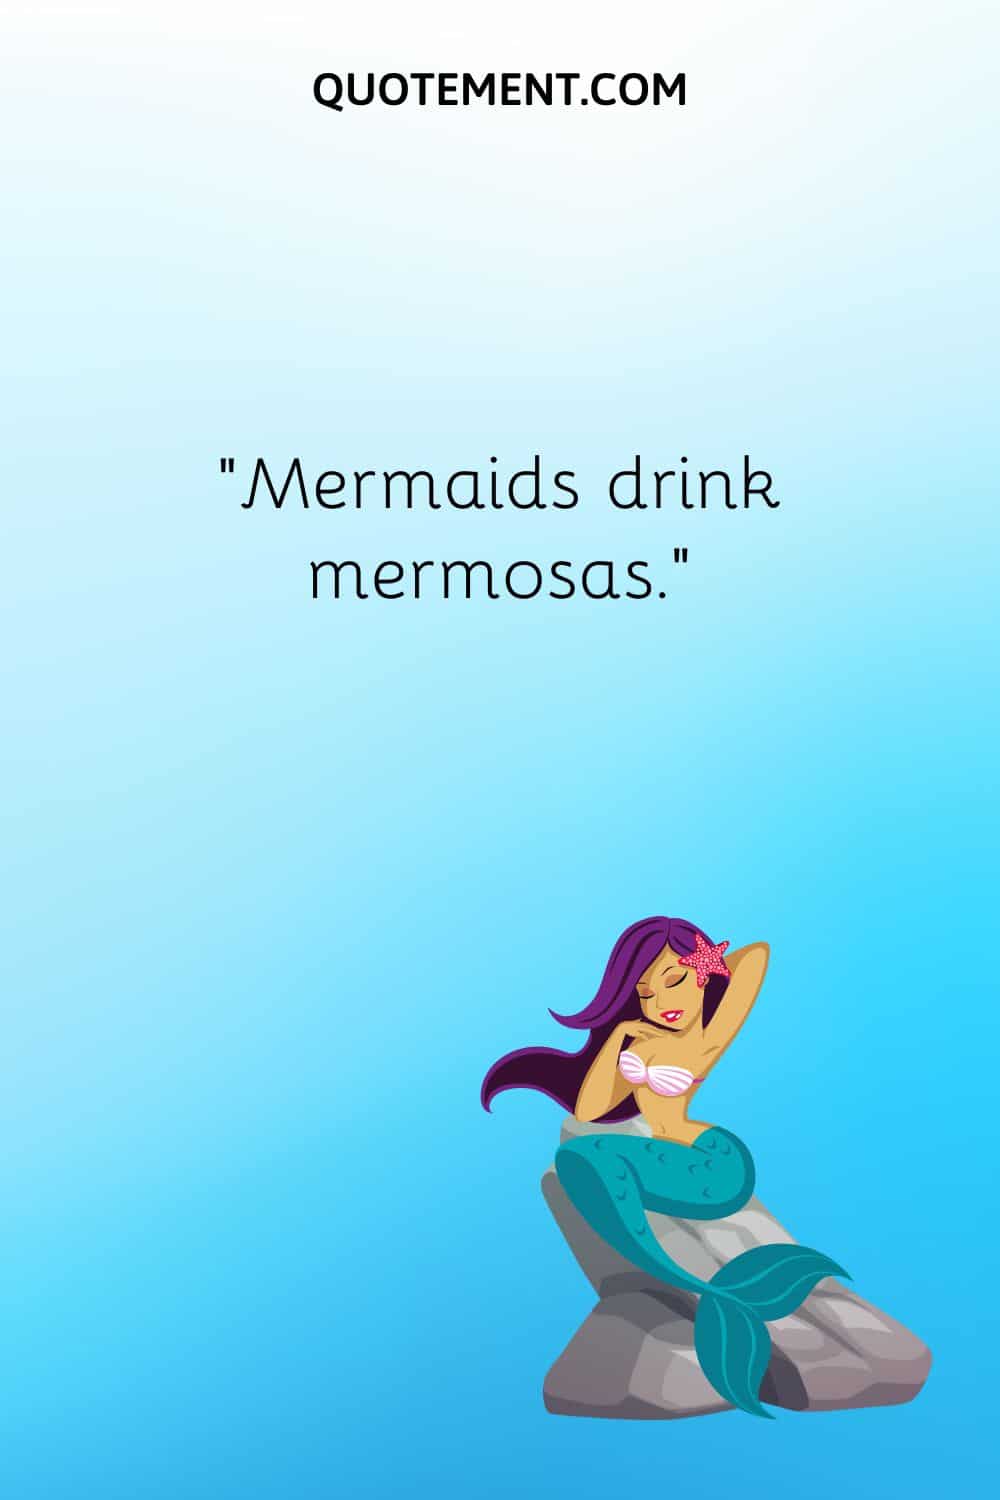 “Mermaids drink mermosas.”